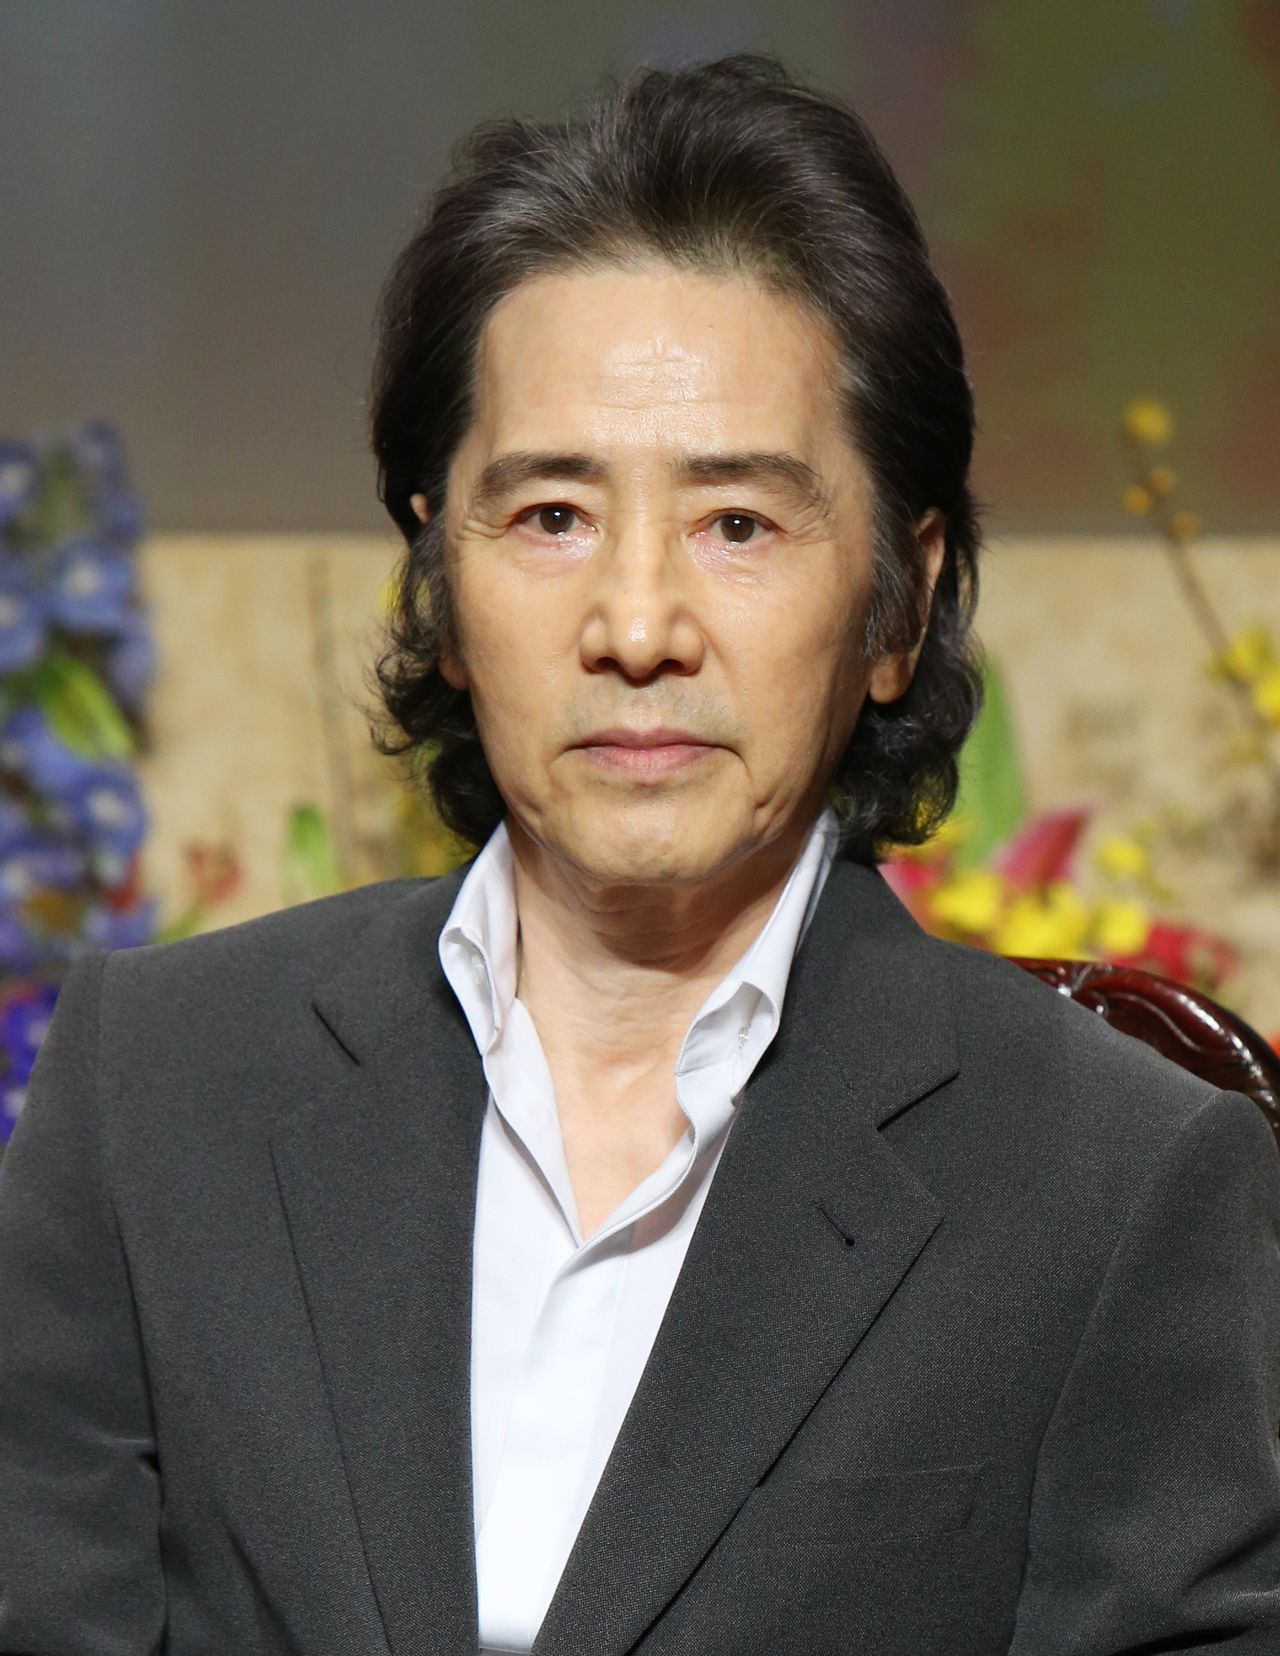  تامورا ماساكازو في يناير/ كانون الثاني 2014. جيجي برس.